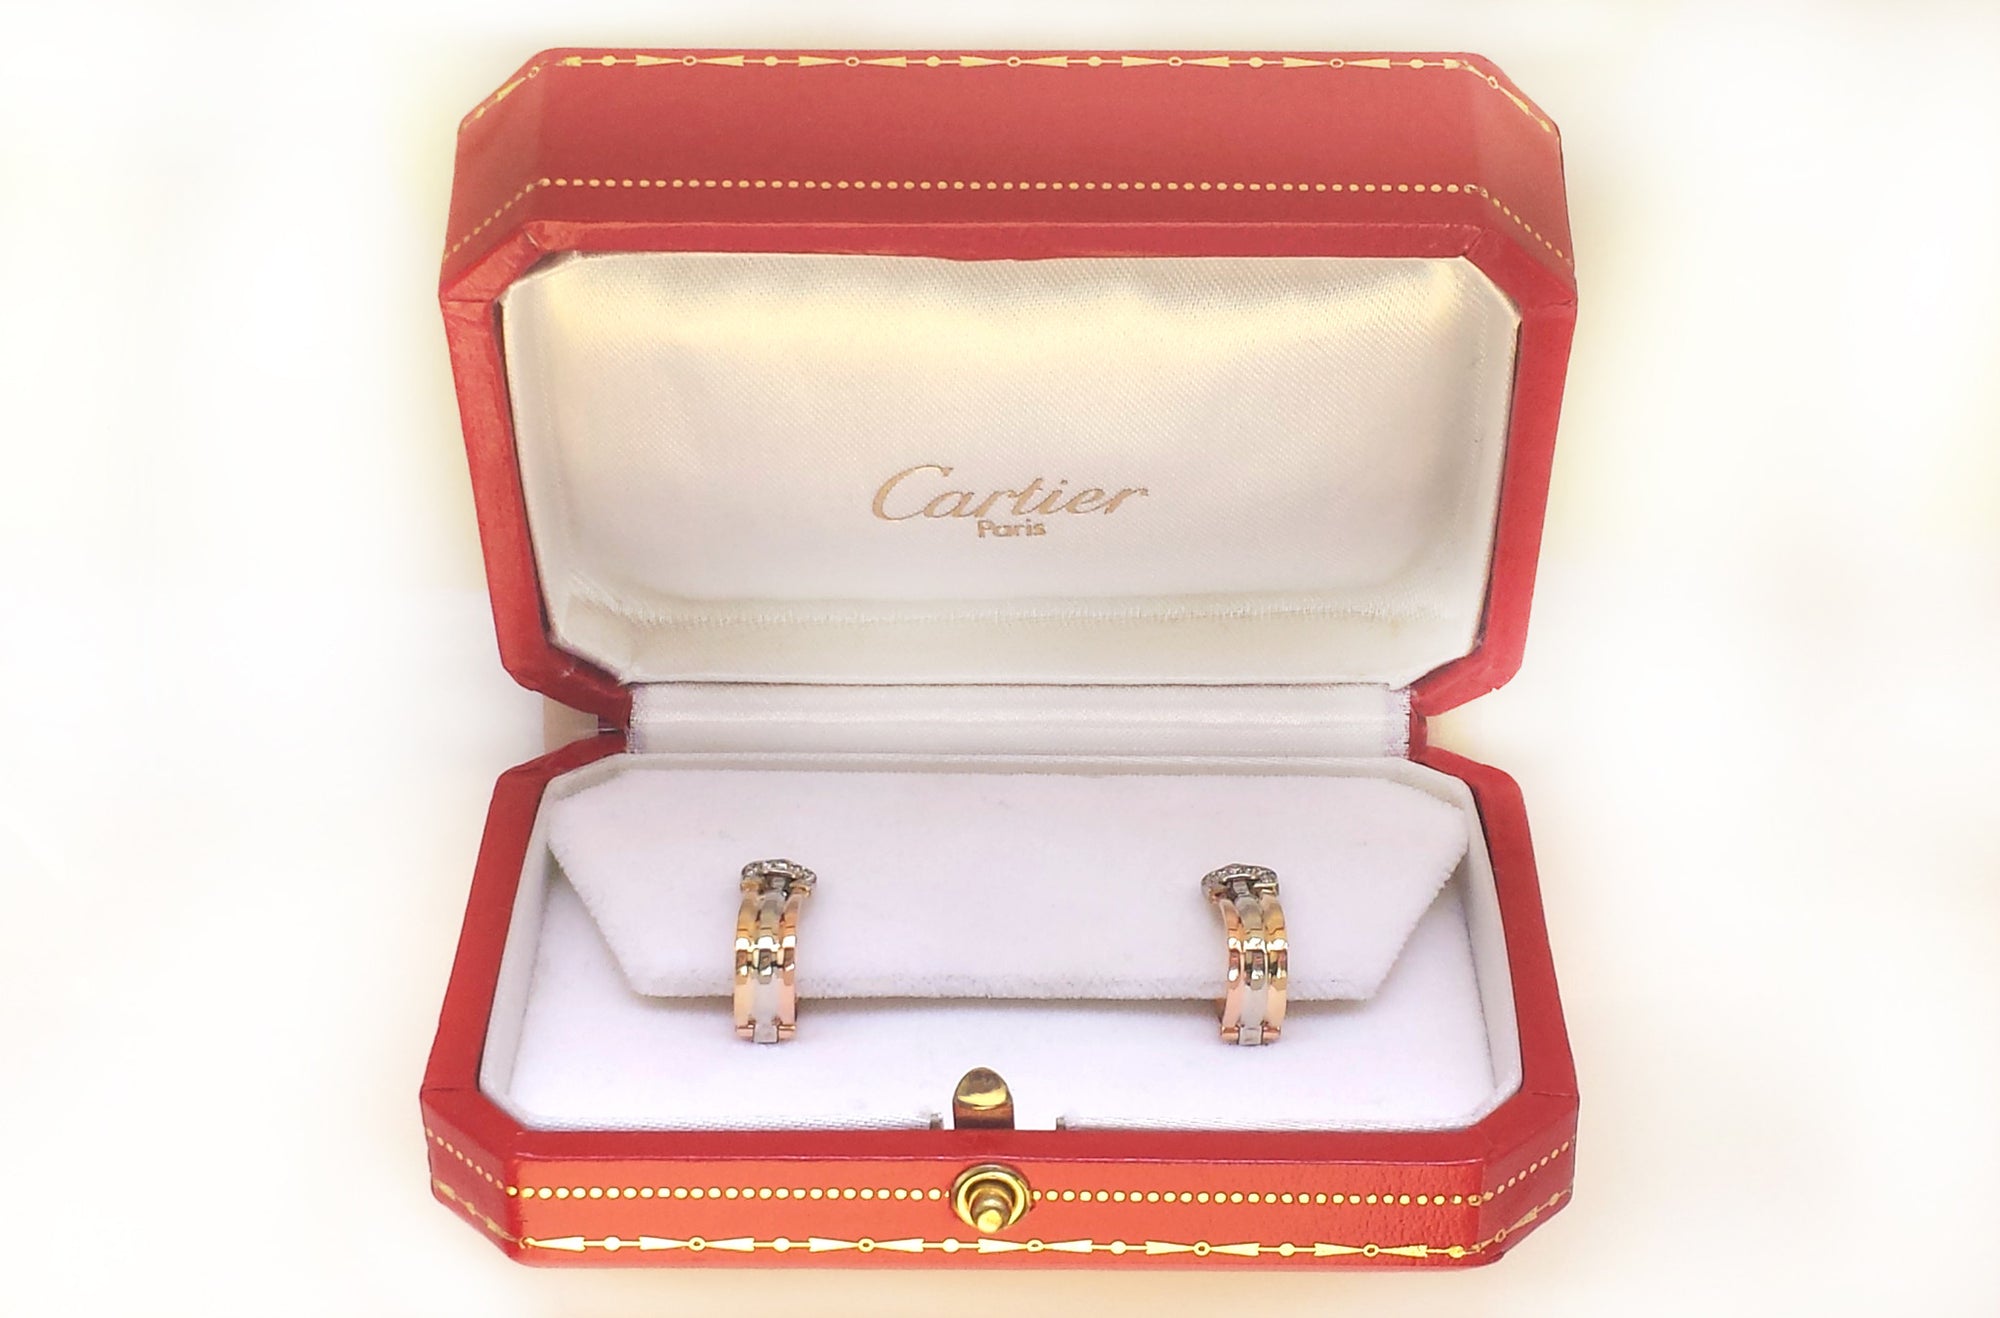 Cartier C de Decor Trinity 18k Gold Diamond Earrings Pierced Ears Box 1990s